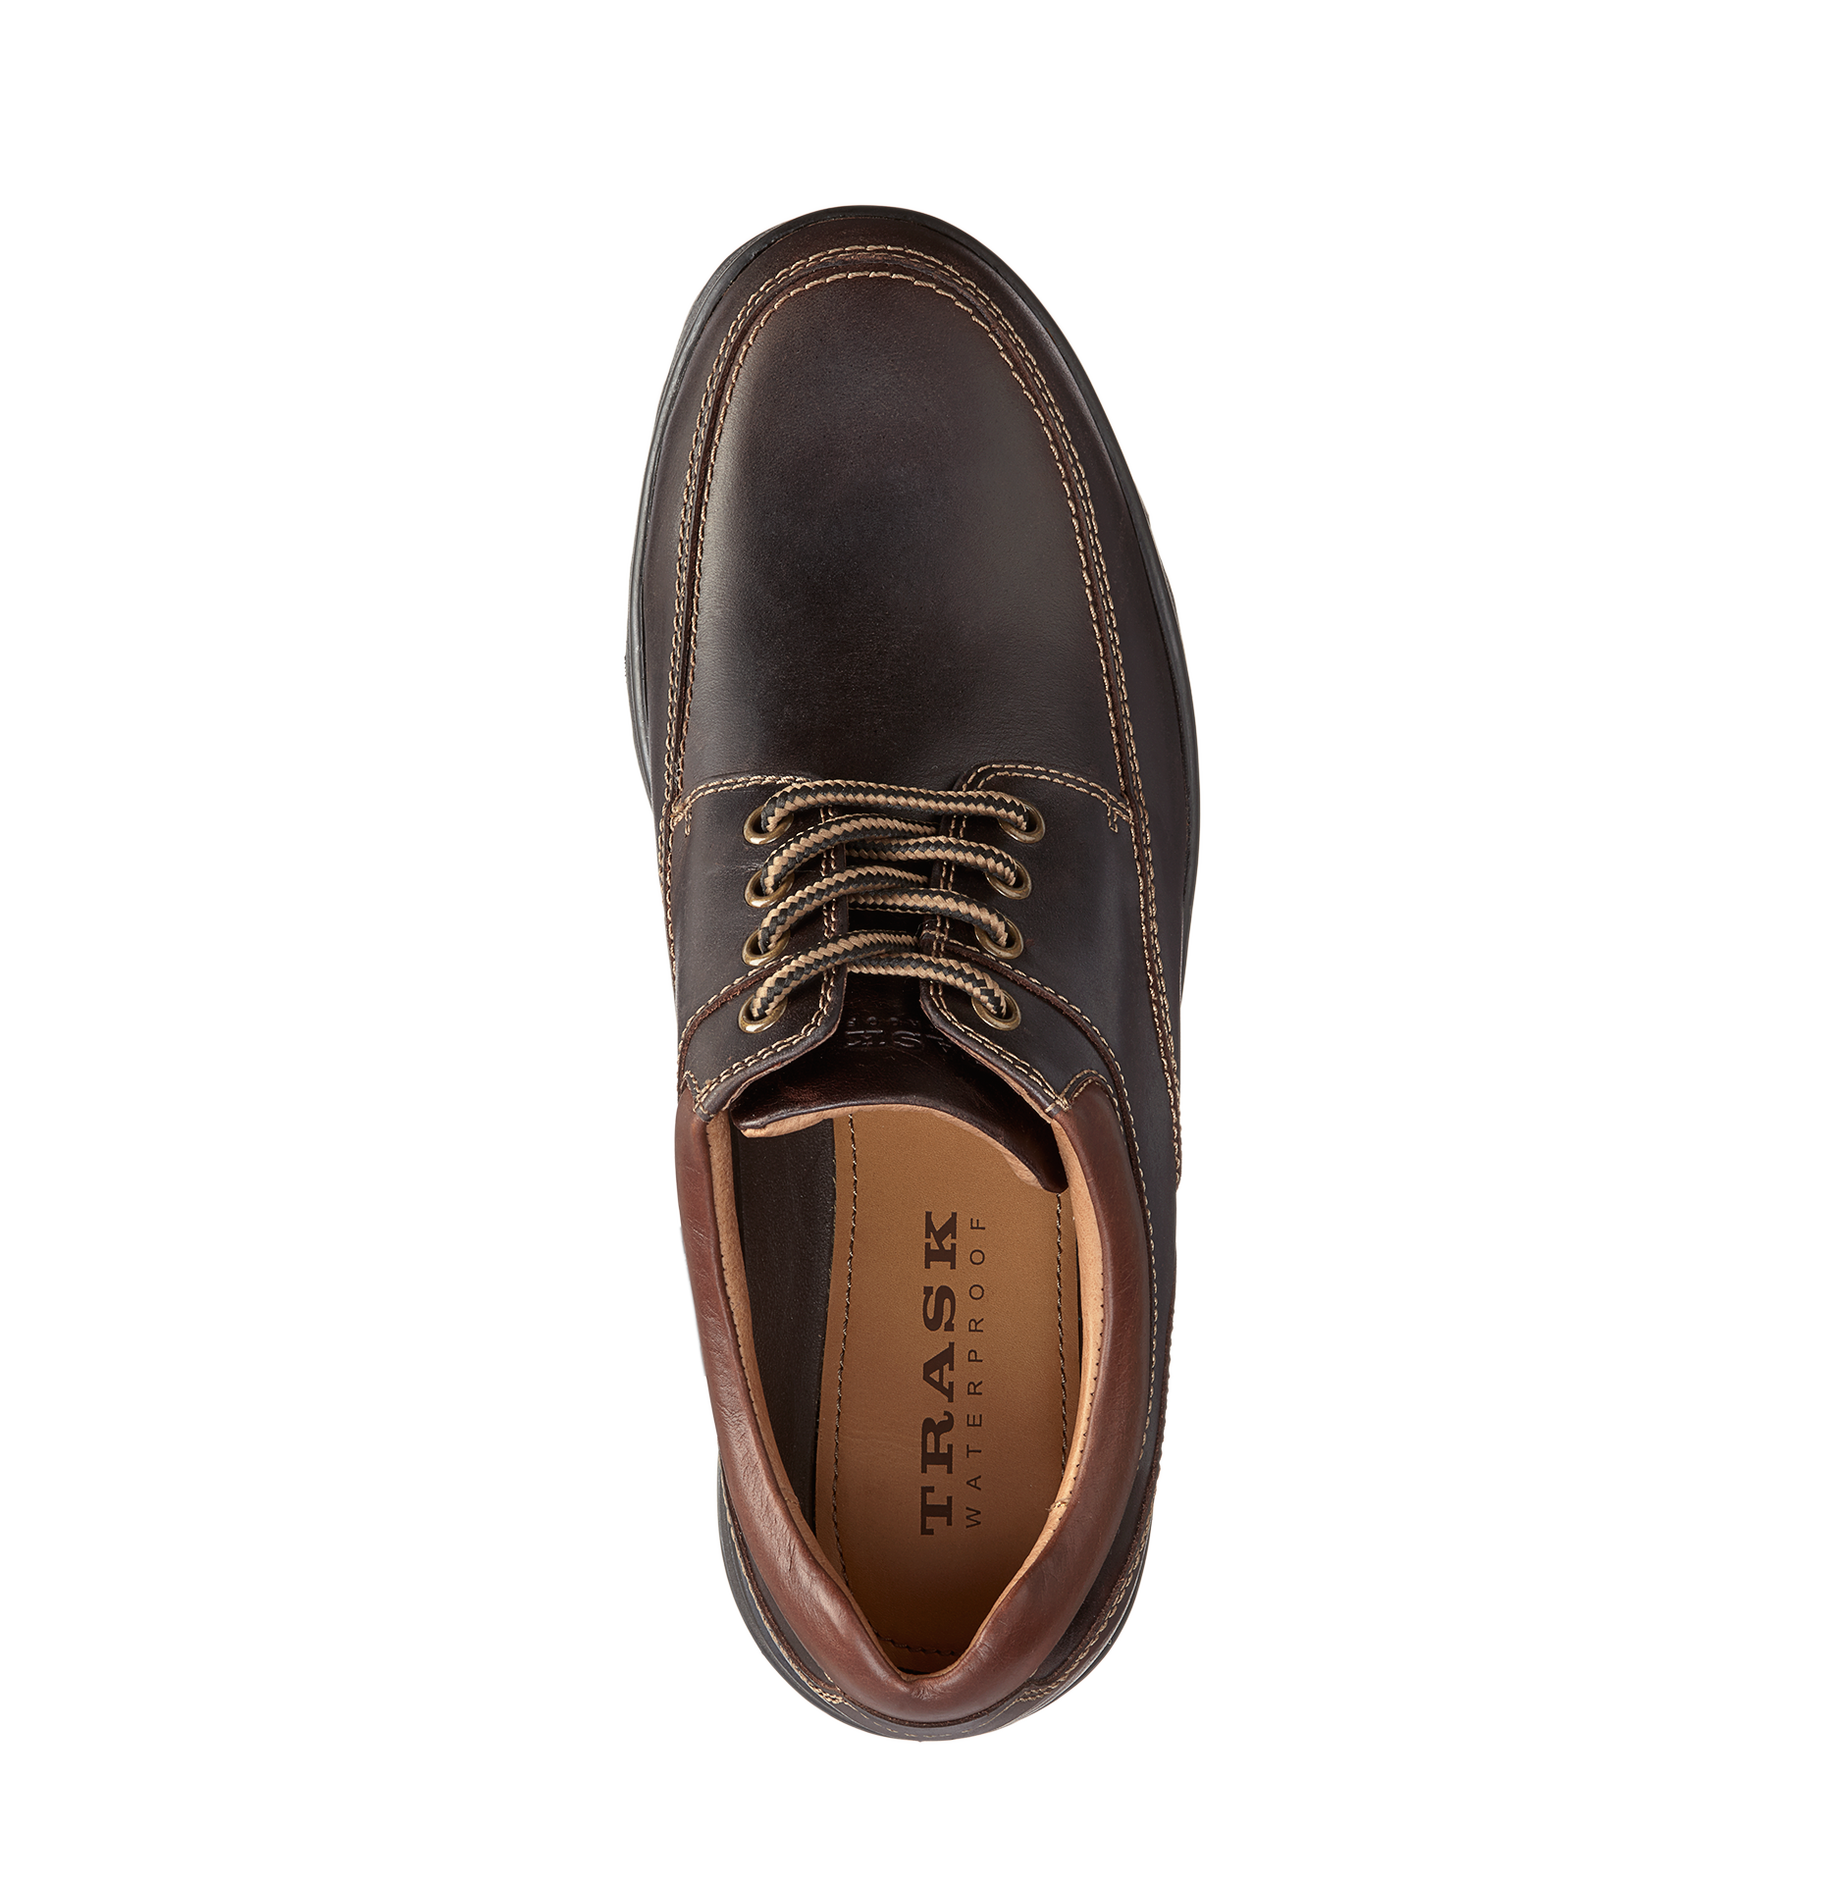 Trask "Westcott" - Waterproof Leather Walking Shoe